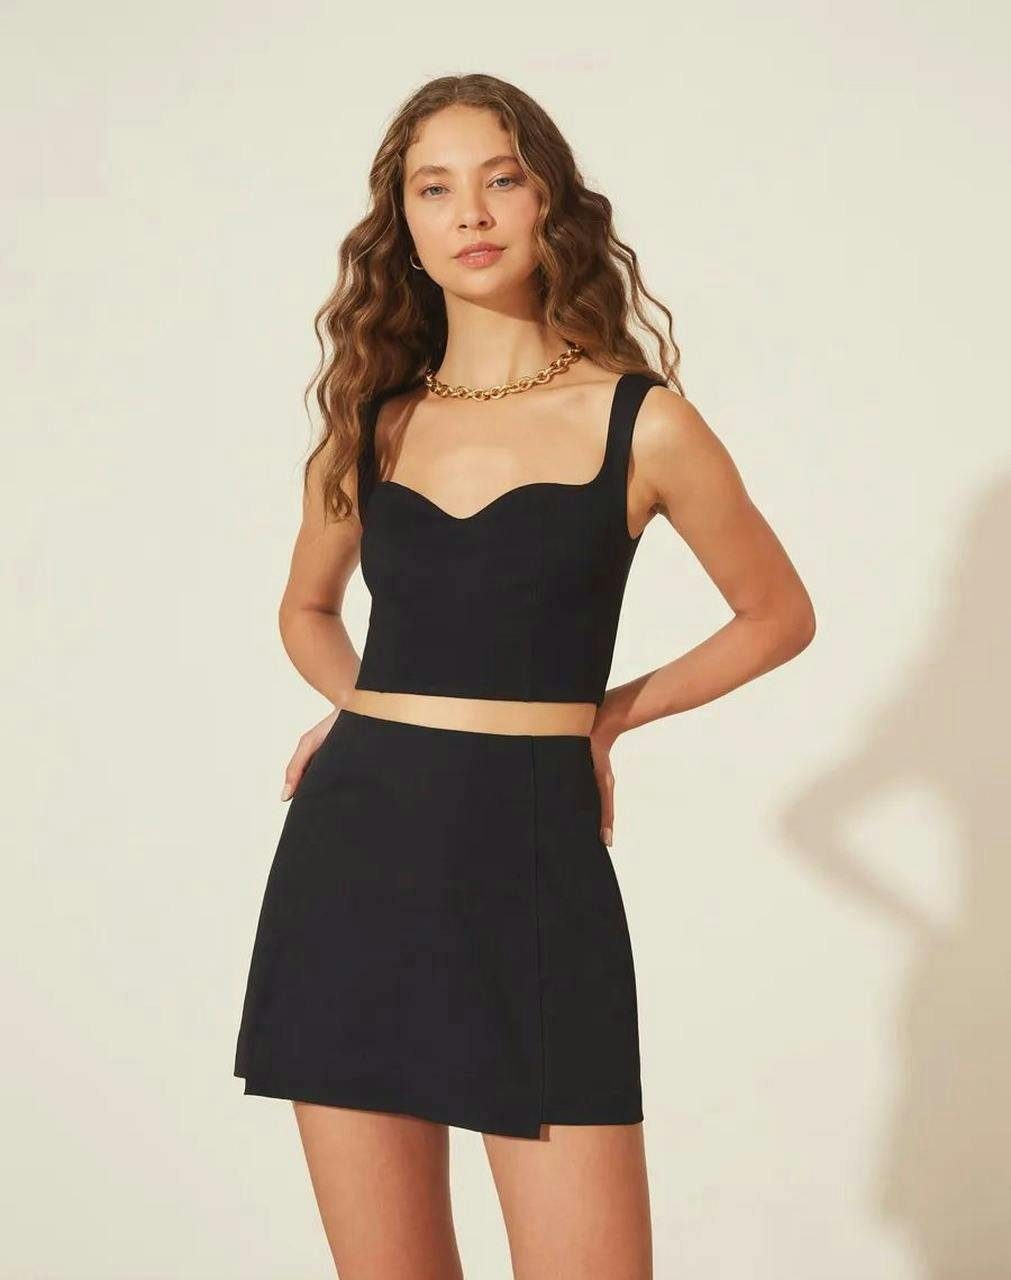 clothing dress skirt miniskirt person evening dress formal wear